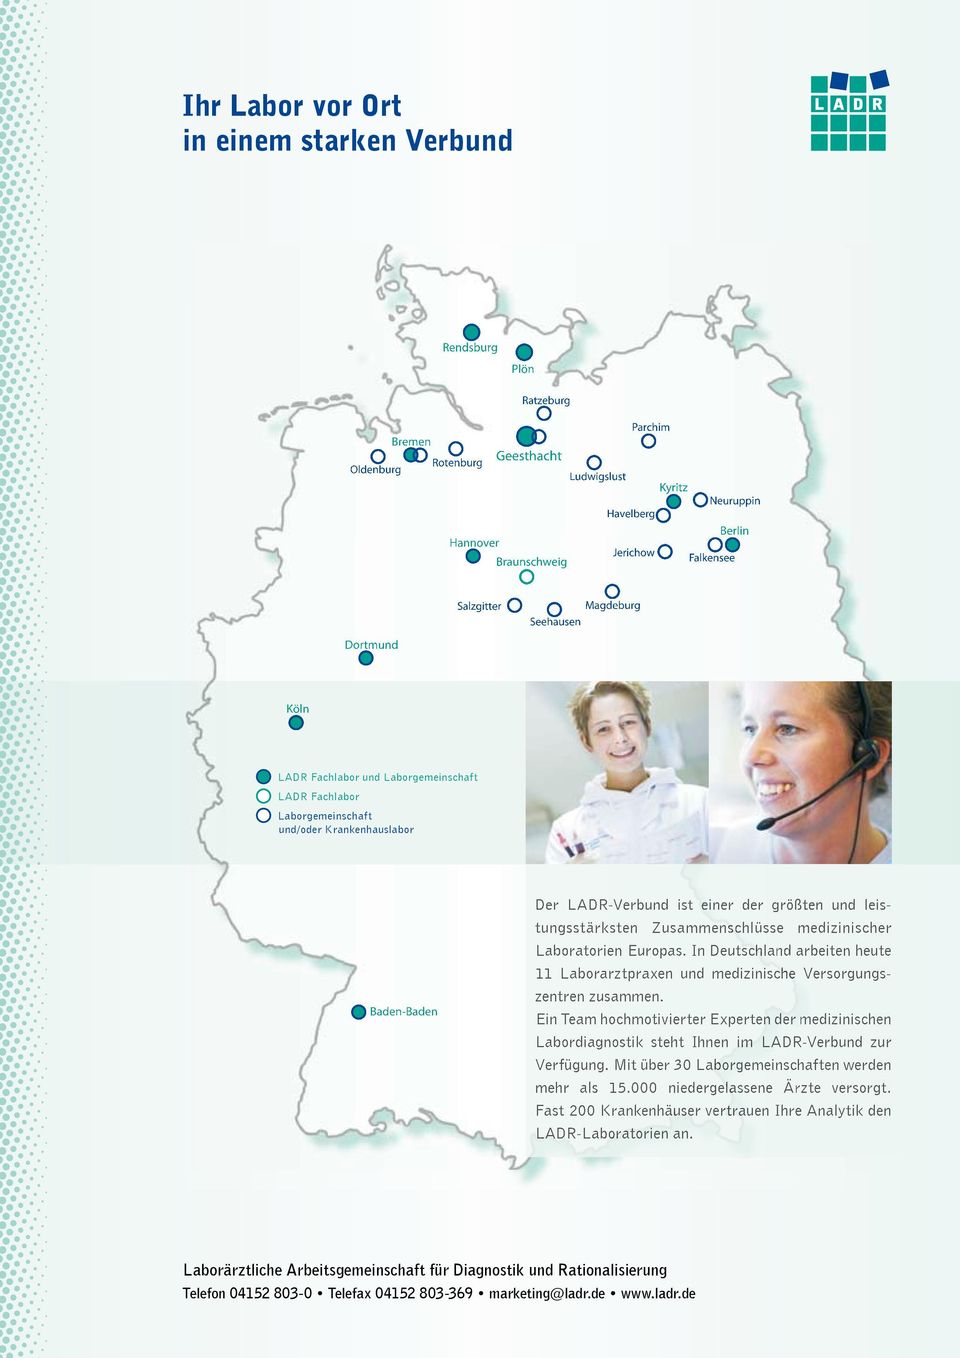 größten und leis- Der LADR-Verbund ist einer der größten und leistungsstärksten Zusammenschlüsse medizinischer tungsstärksten Zusammenschlüsse medizinischer Laboratorien Europas.